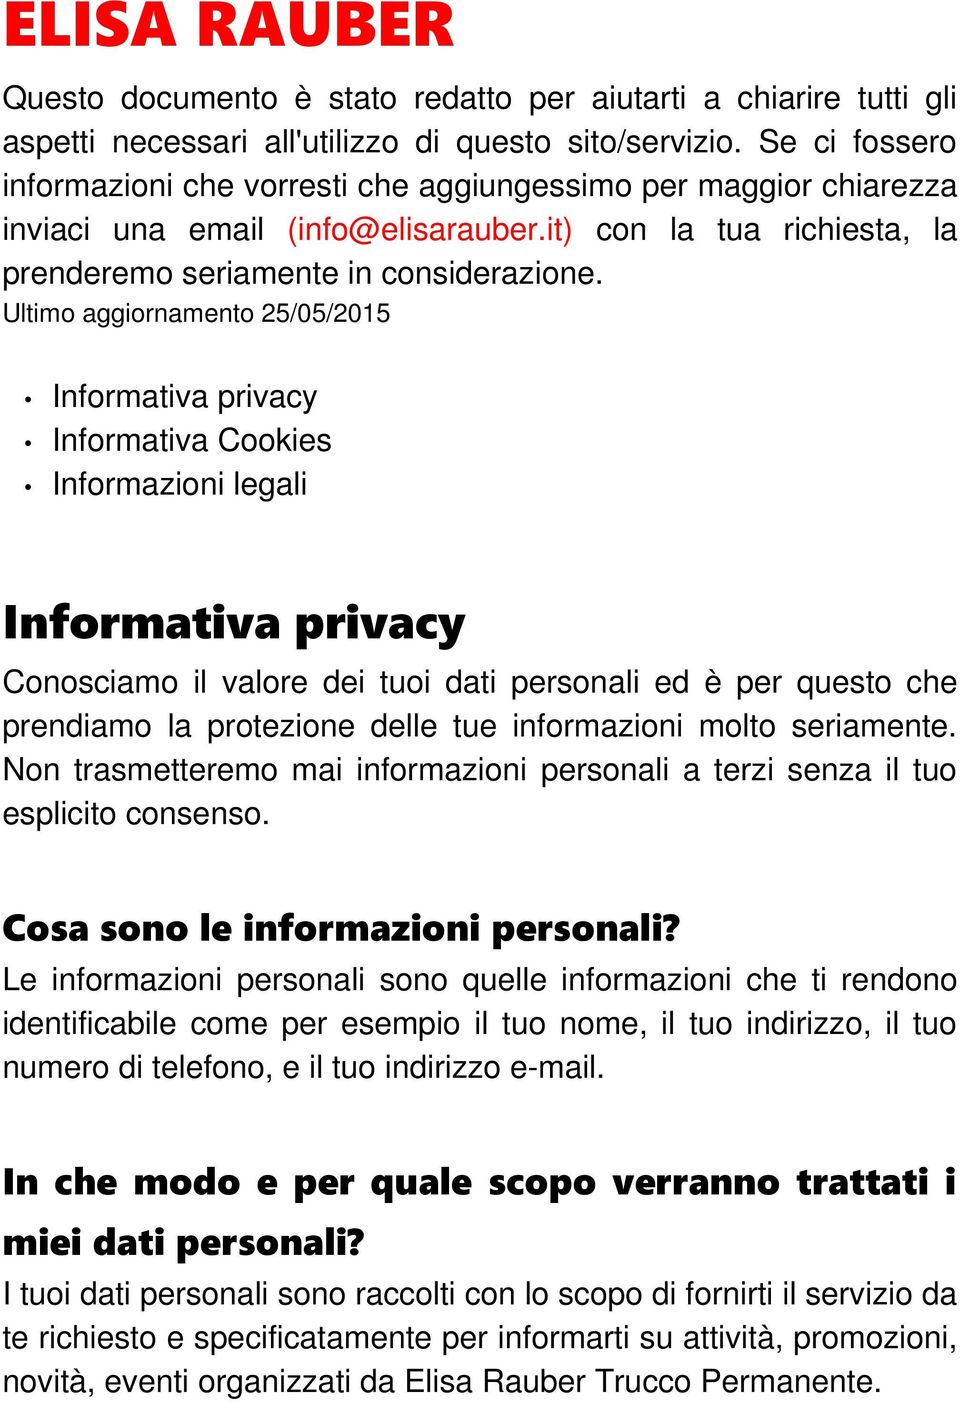 Ultimo aggiornamento 25/05/2015 Informativa privacy Informativa Cookies Informazioni legali Informativa privacy Conosciamo il valore dei tuoi dati personali ed è per questo che prendiamo la